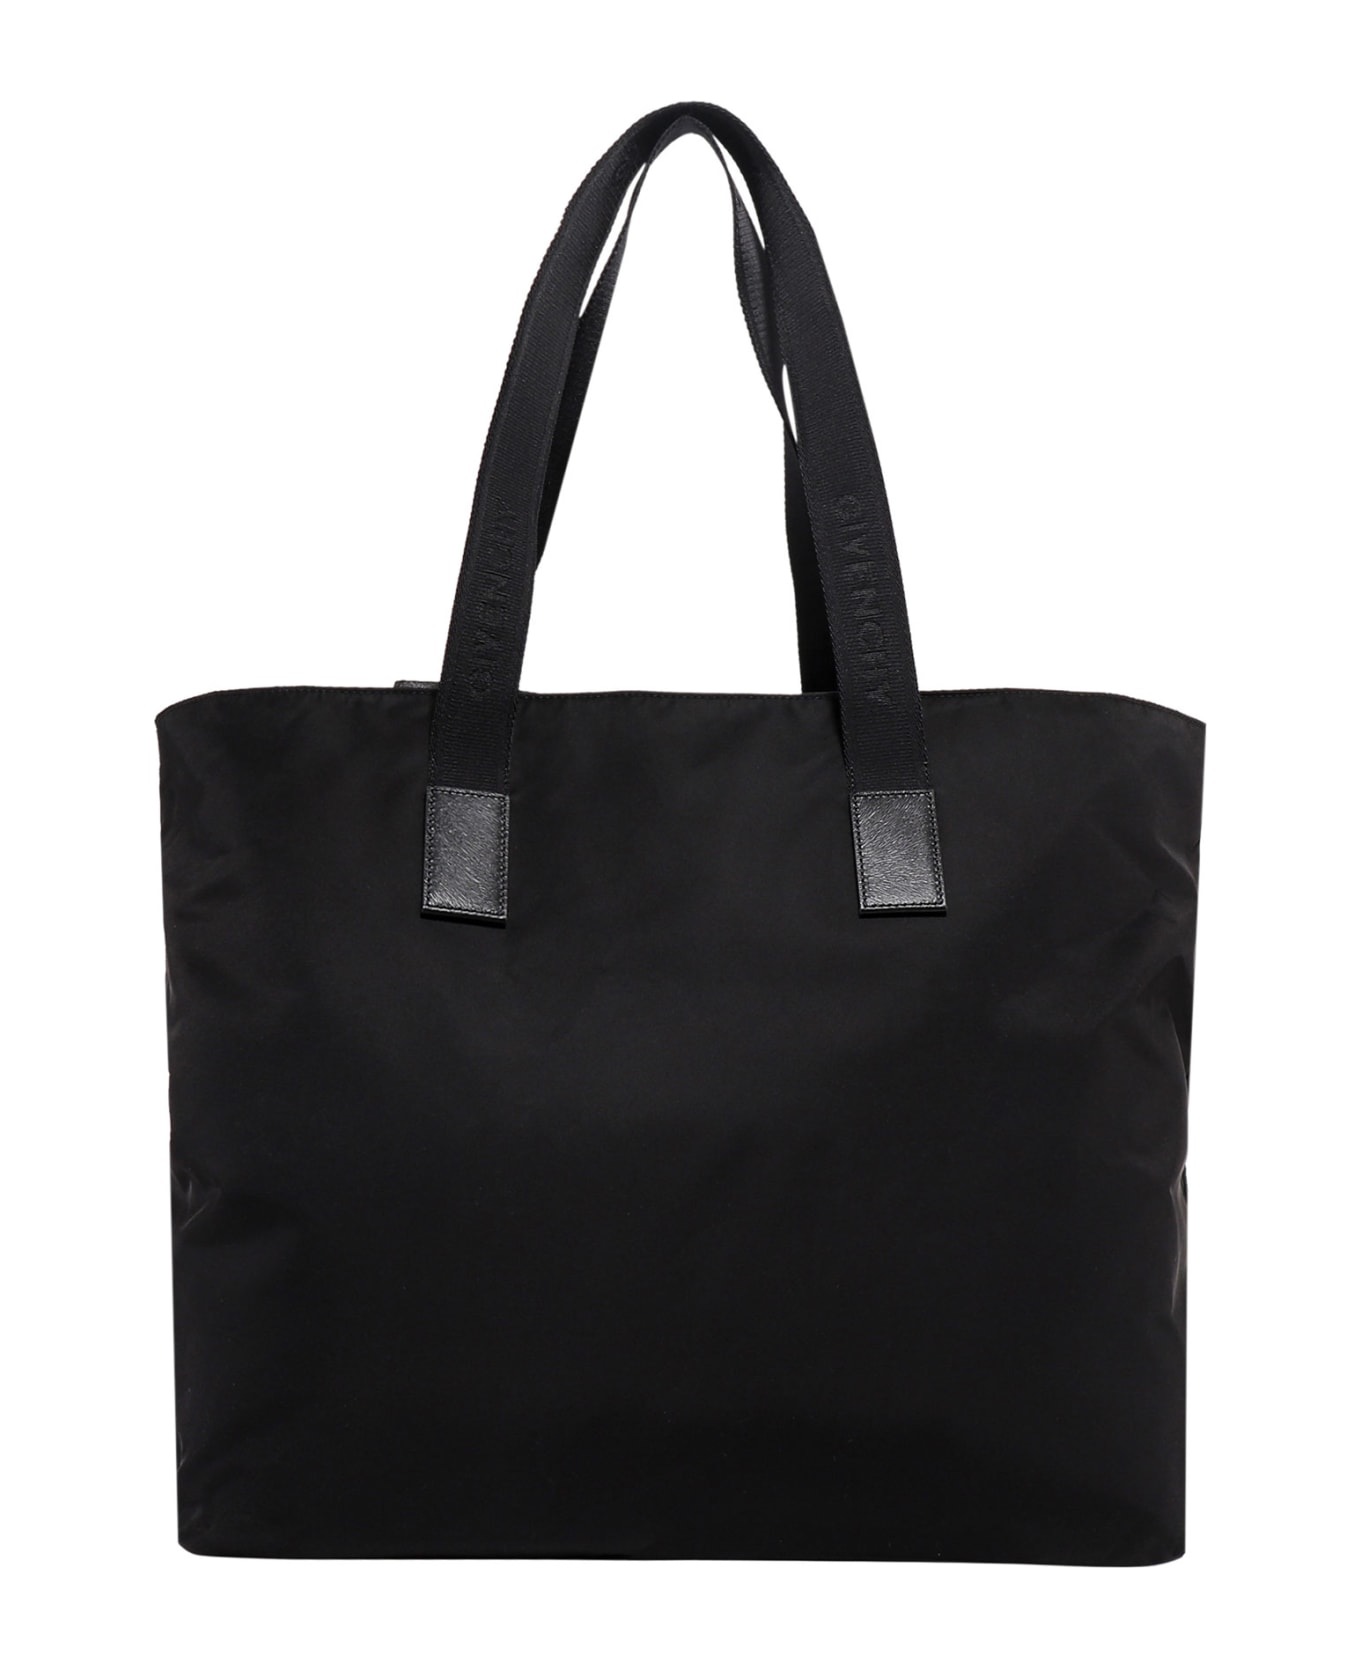 Givenchy 4g Light Shoulder Bag - Black